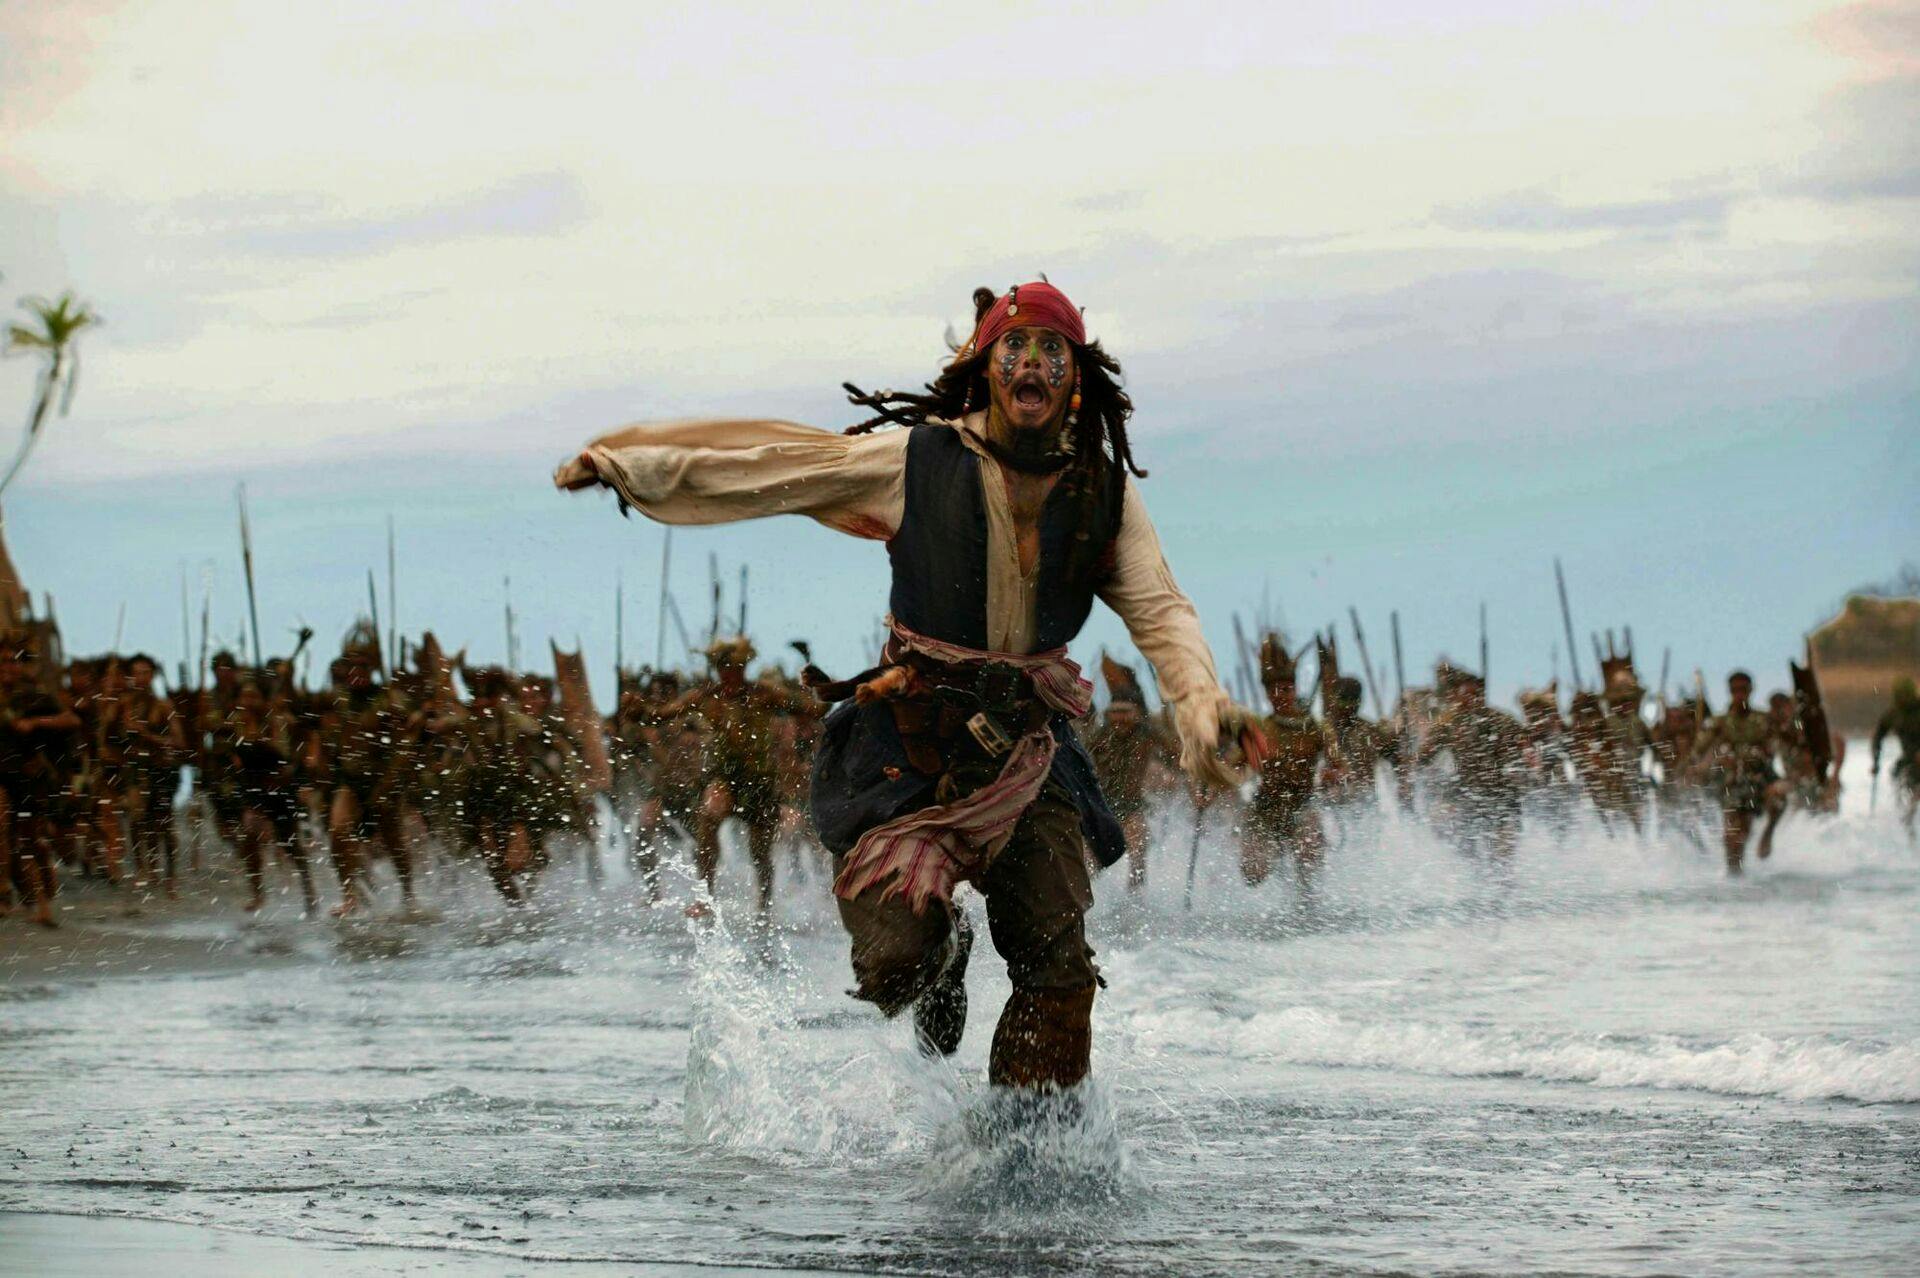 Kommer Johnny Depp løbende tilbage i rollen som Jack Sparrow?